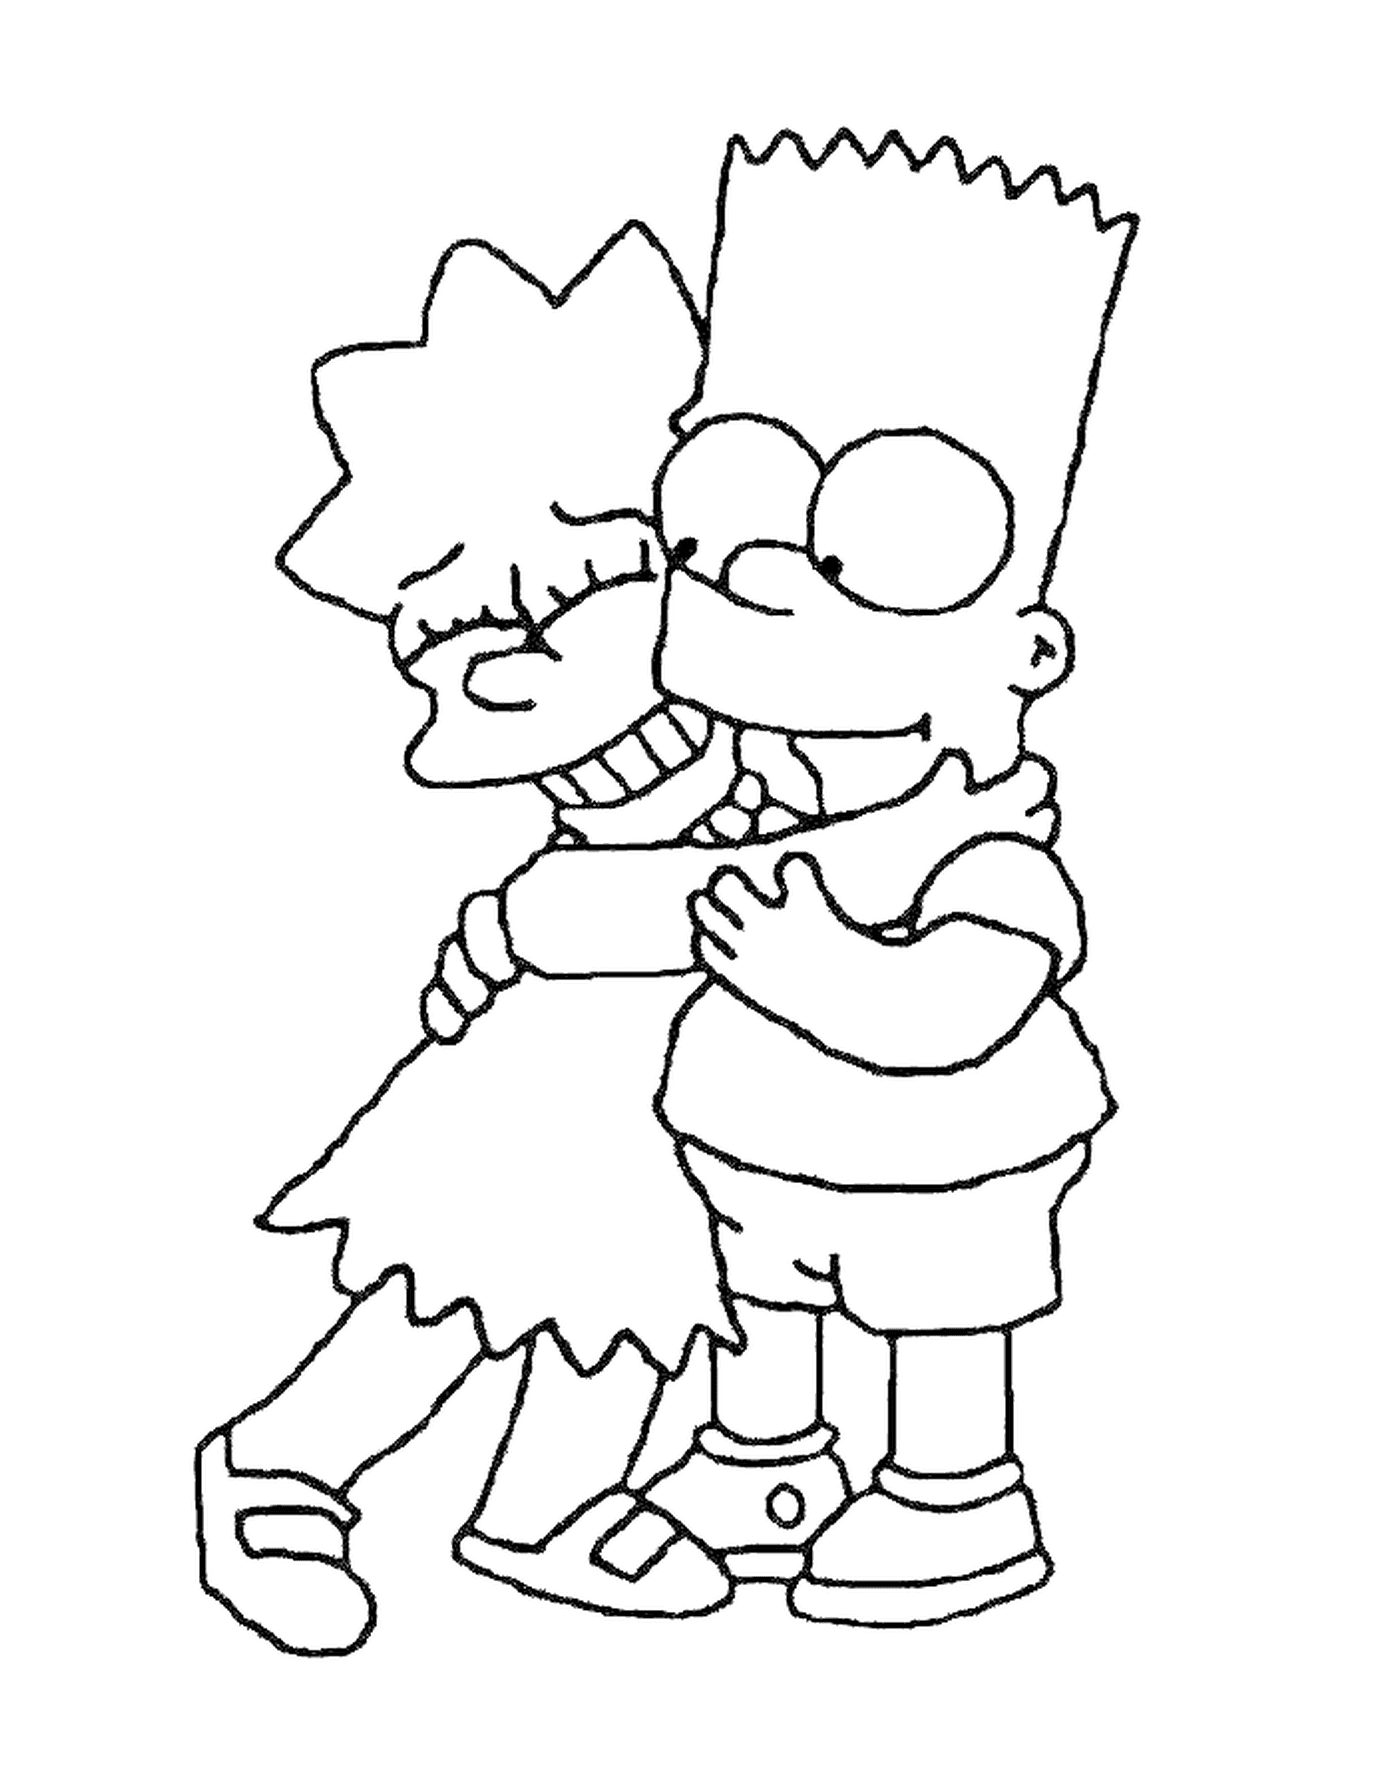  Барт и Лиза обнимаются, мальчик держит девушку на руках 